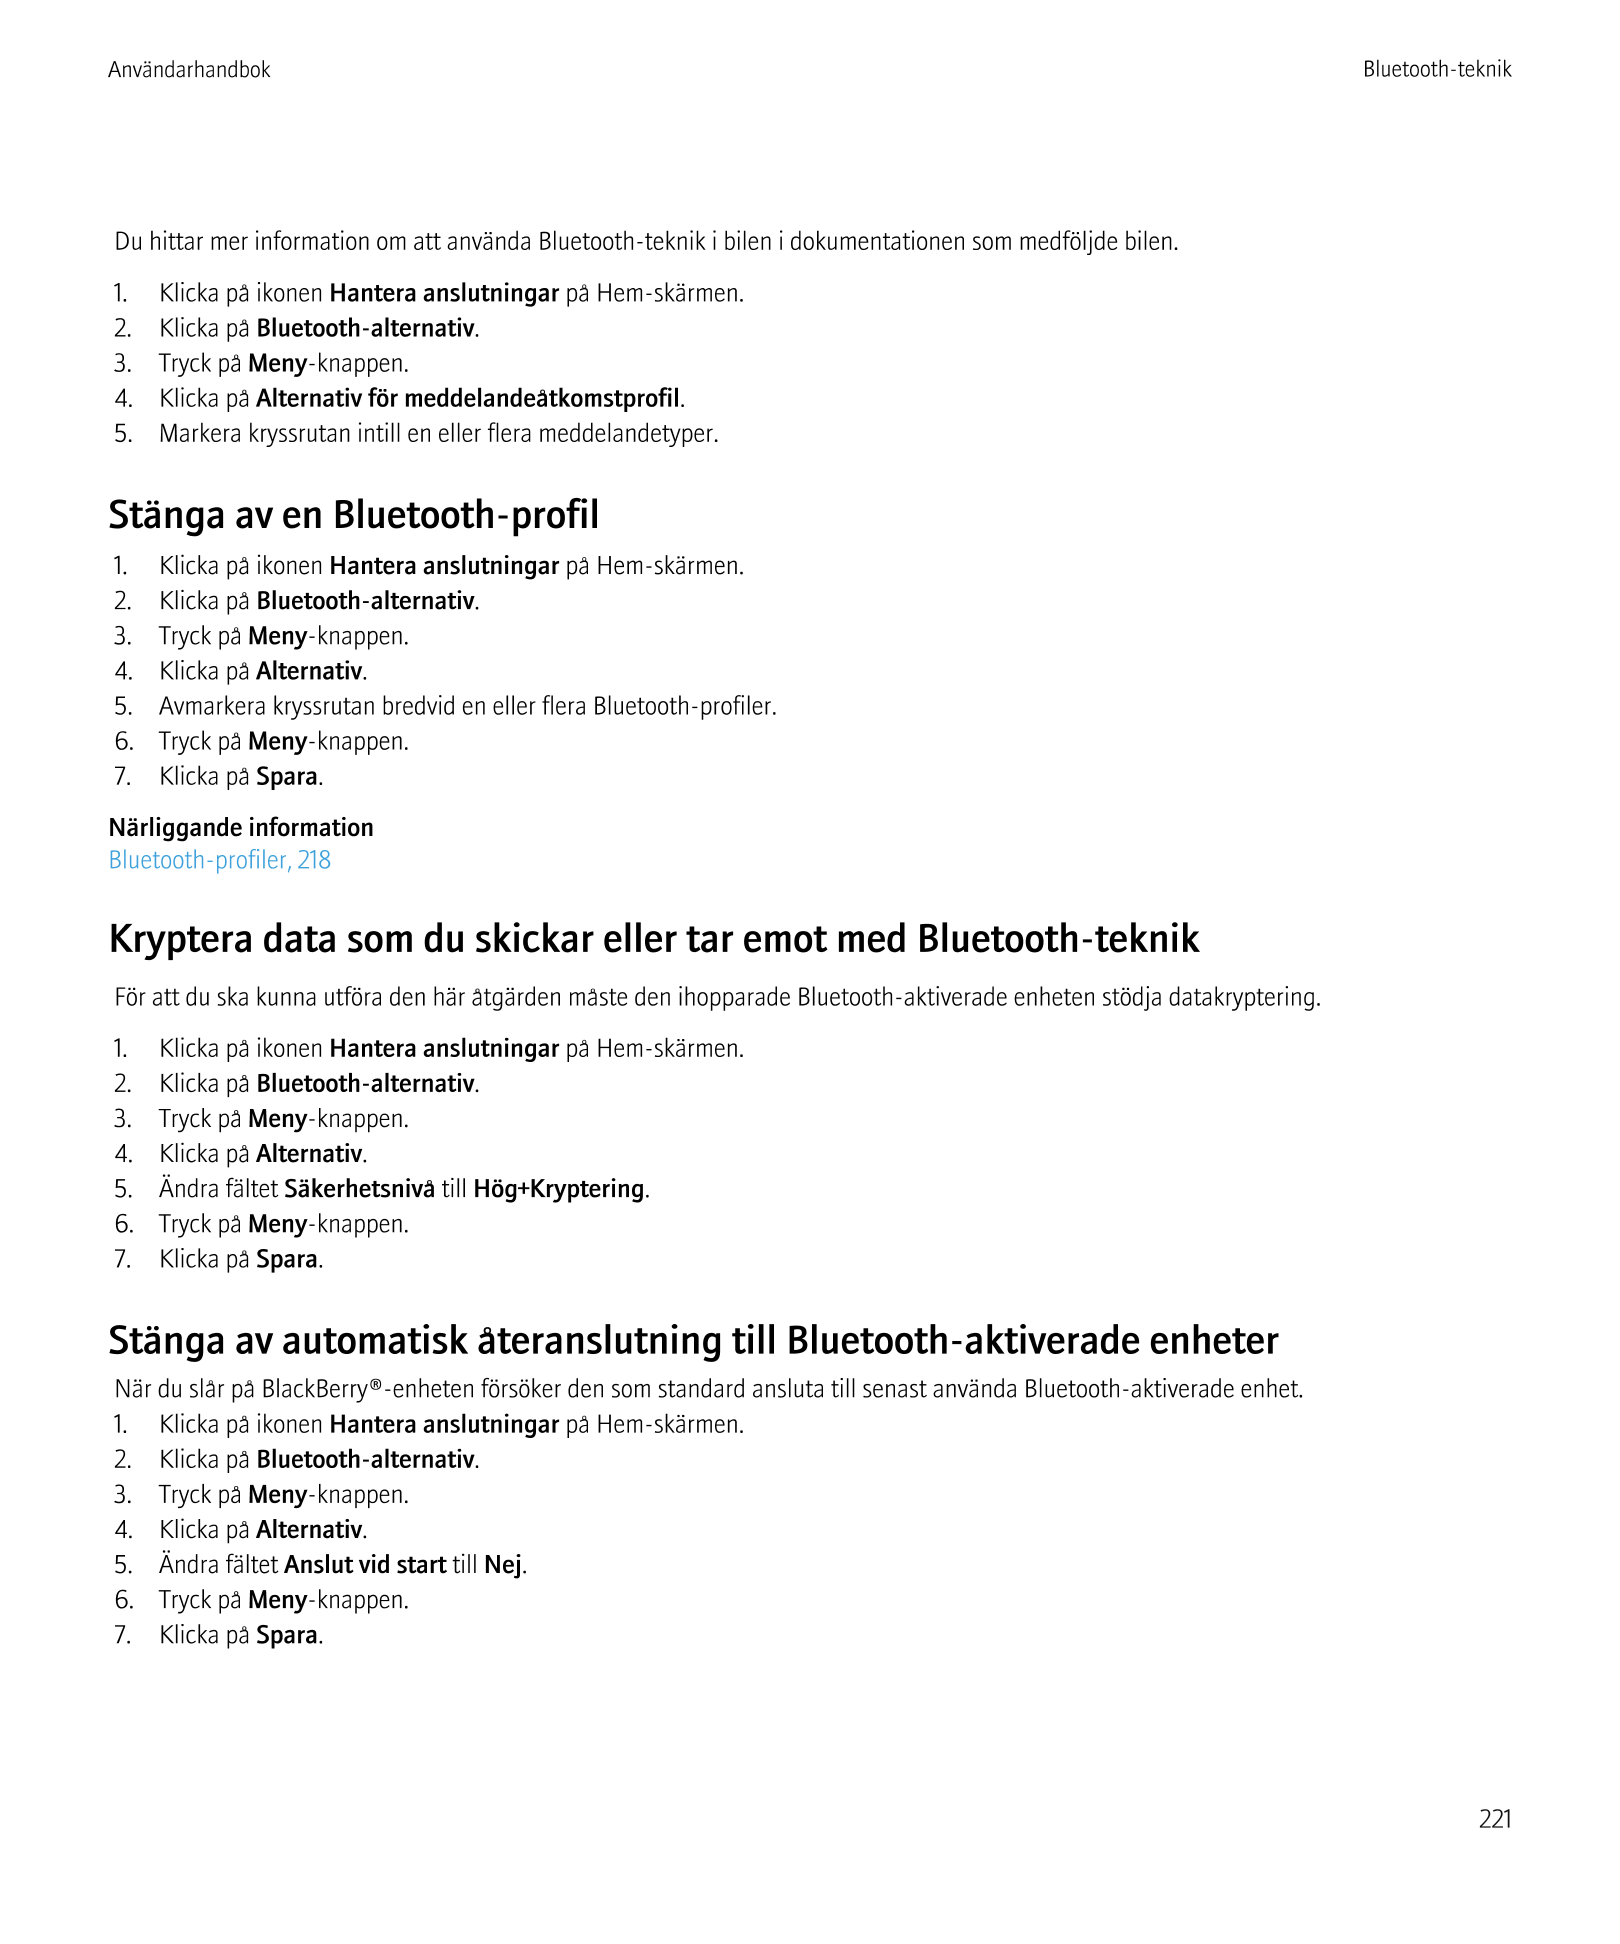 Användarhandbok Bluetooth-teknik
Du hittar mer information om att använda Bluetooth-teknik i bilen i dokumentationen som medfölj